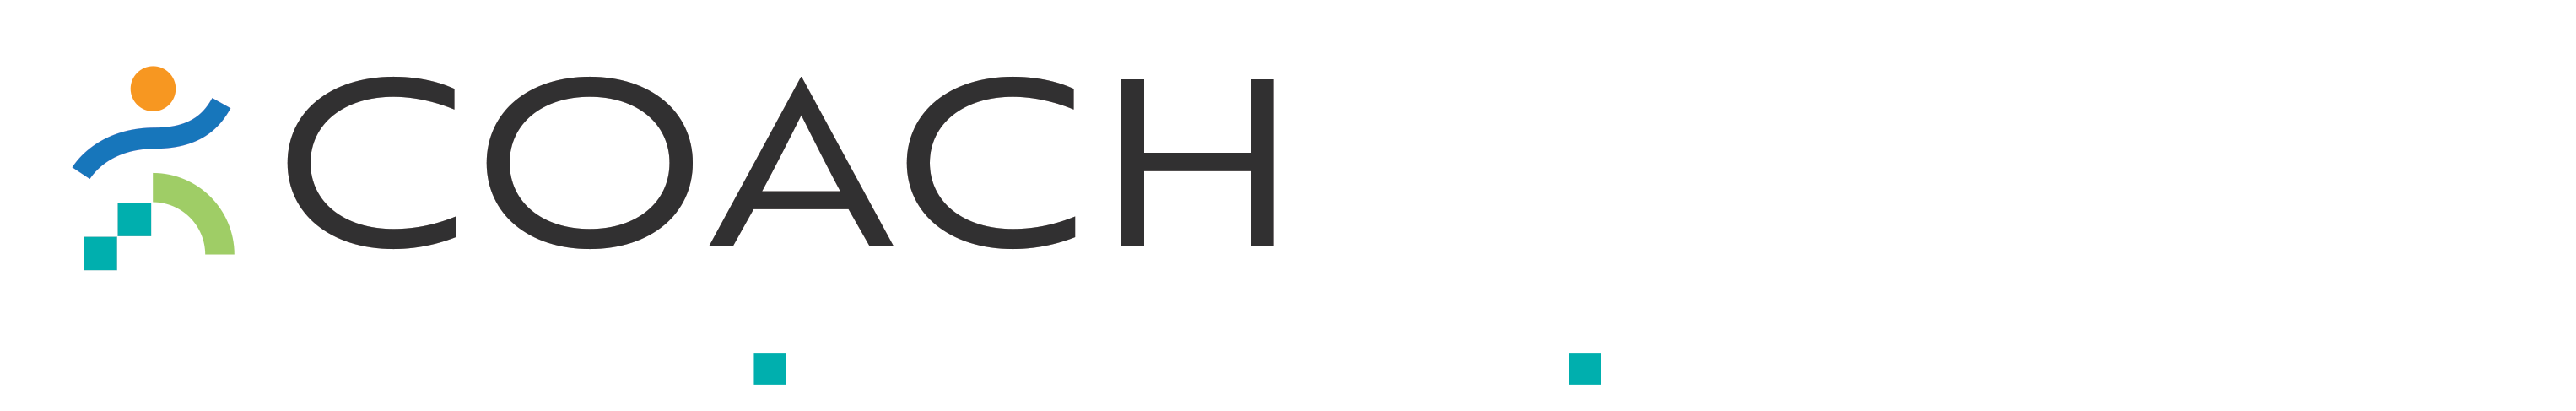 CoachKimmie.com logo